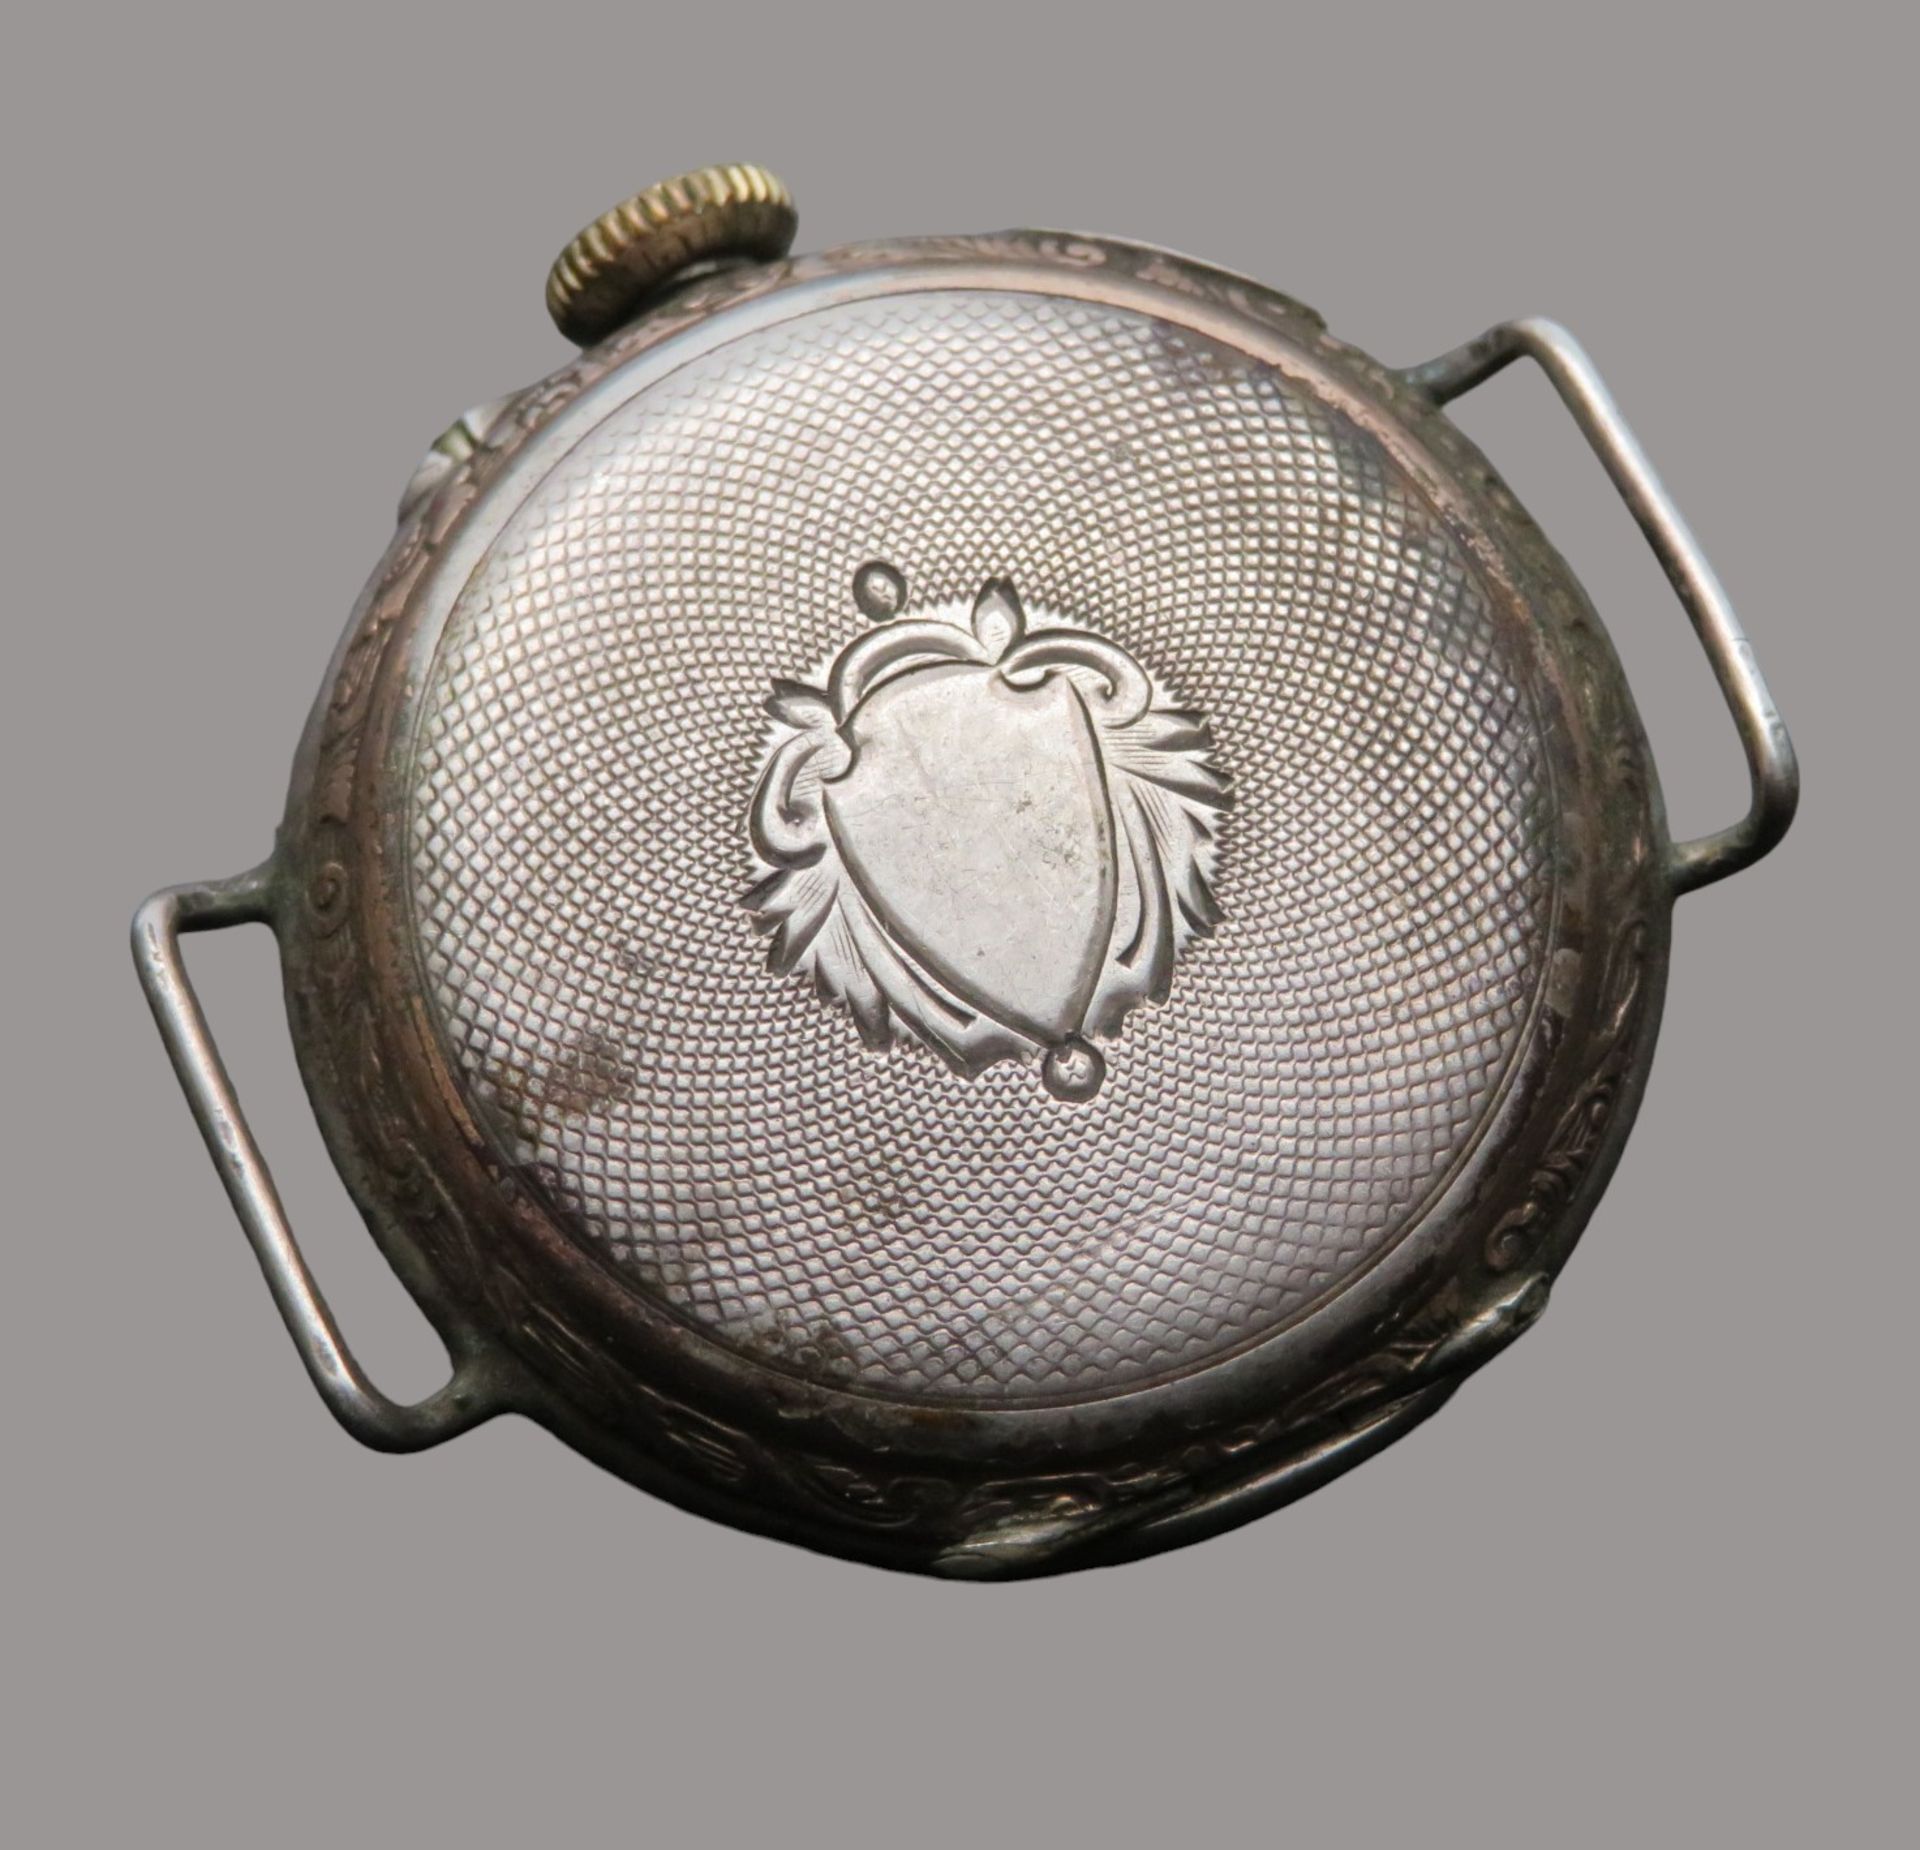 DAU, um 1900, Gehäuse Silber 800/000, punziert, Kronenaufzug, Werk läuft nicht an, d 3,2 cm. - Image 2 of 2